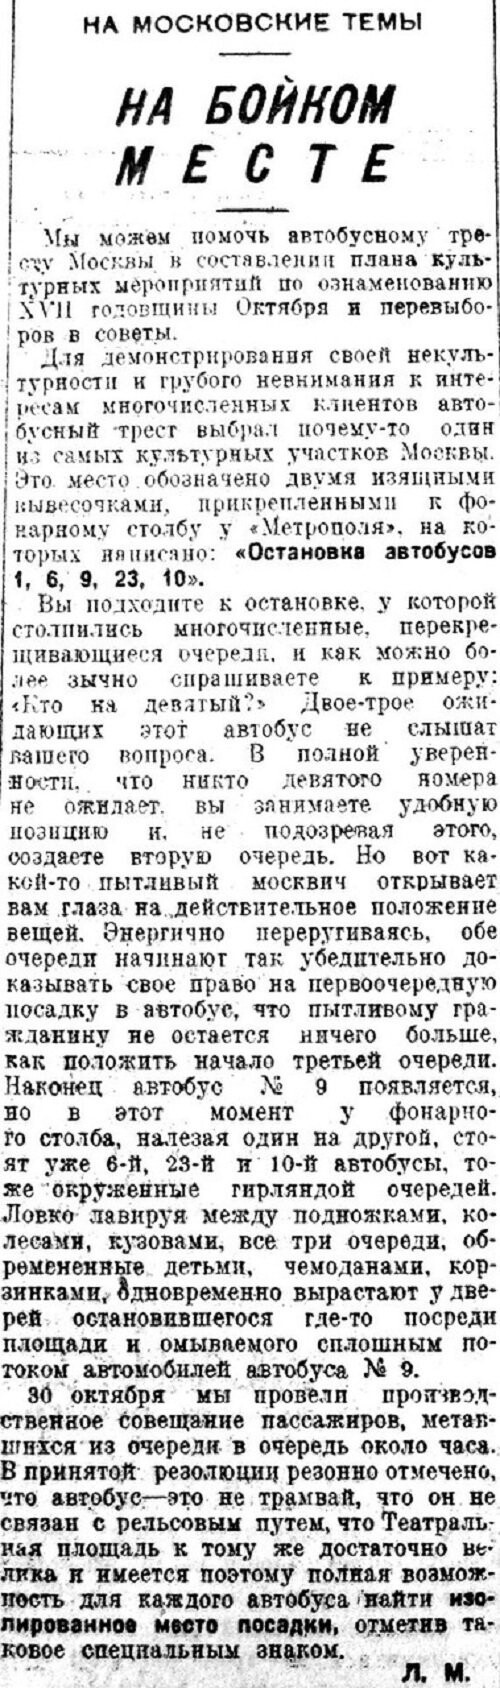 «Известия», 2 ноября 1934 г.